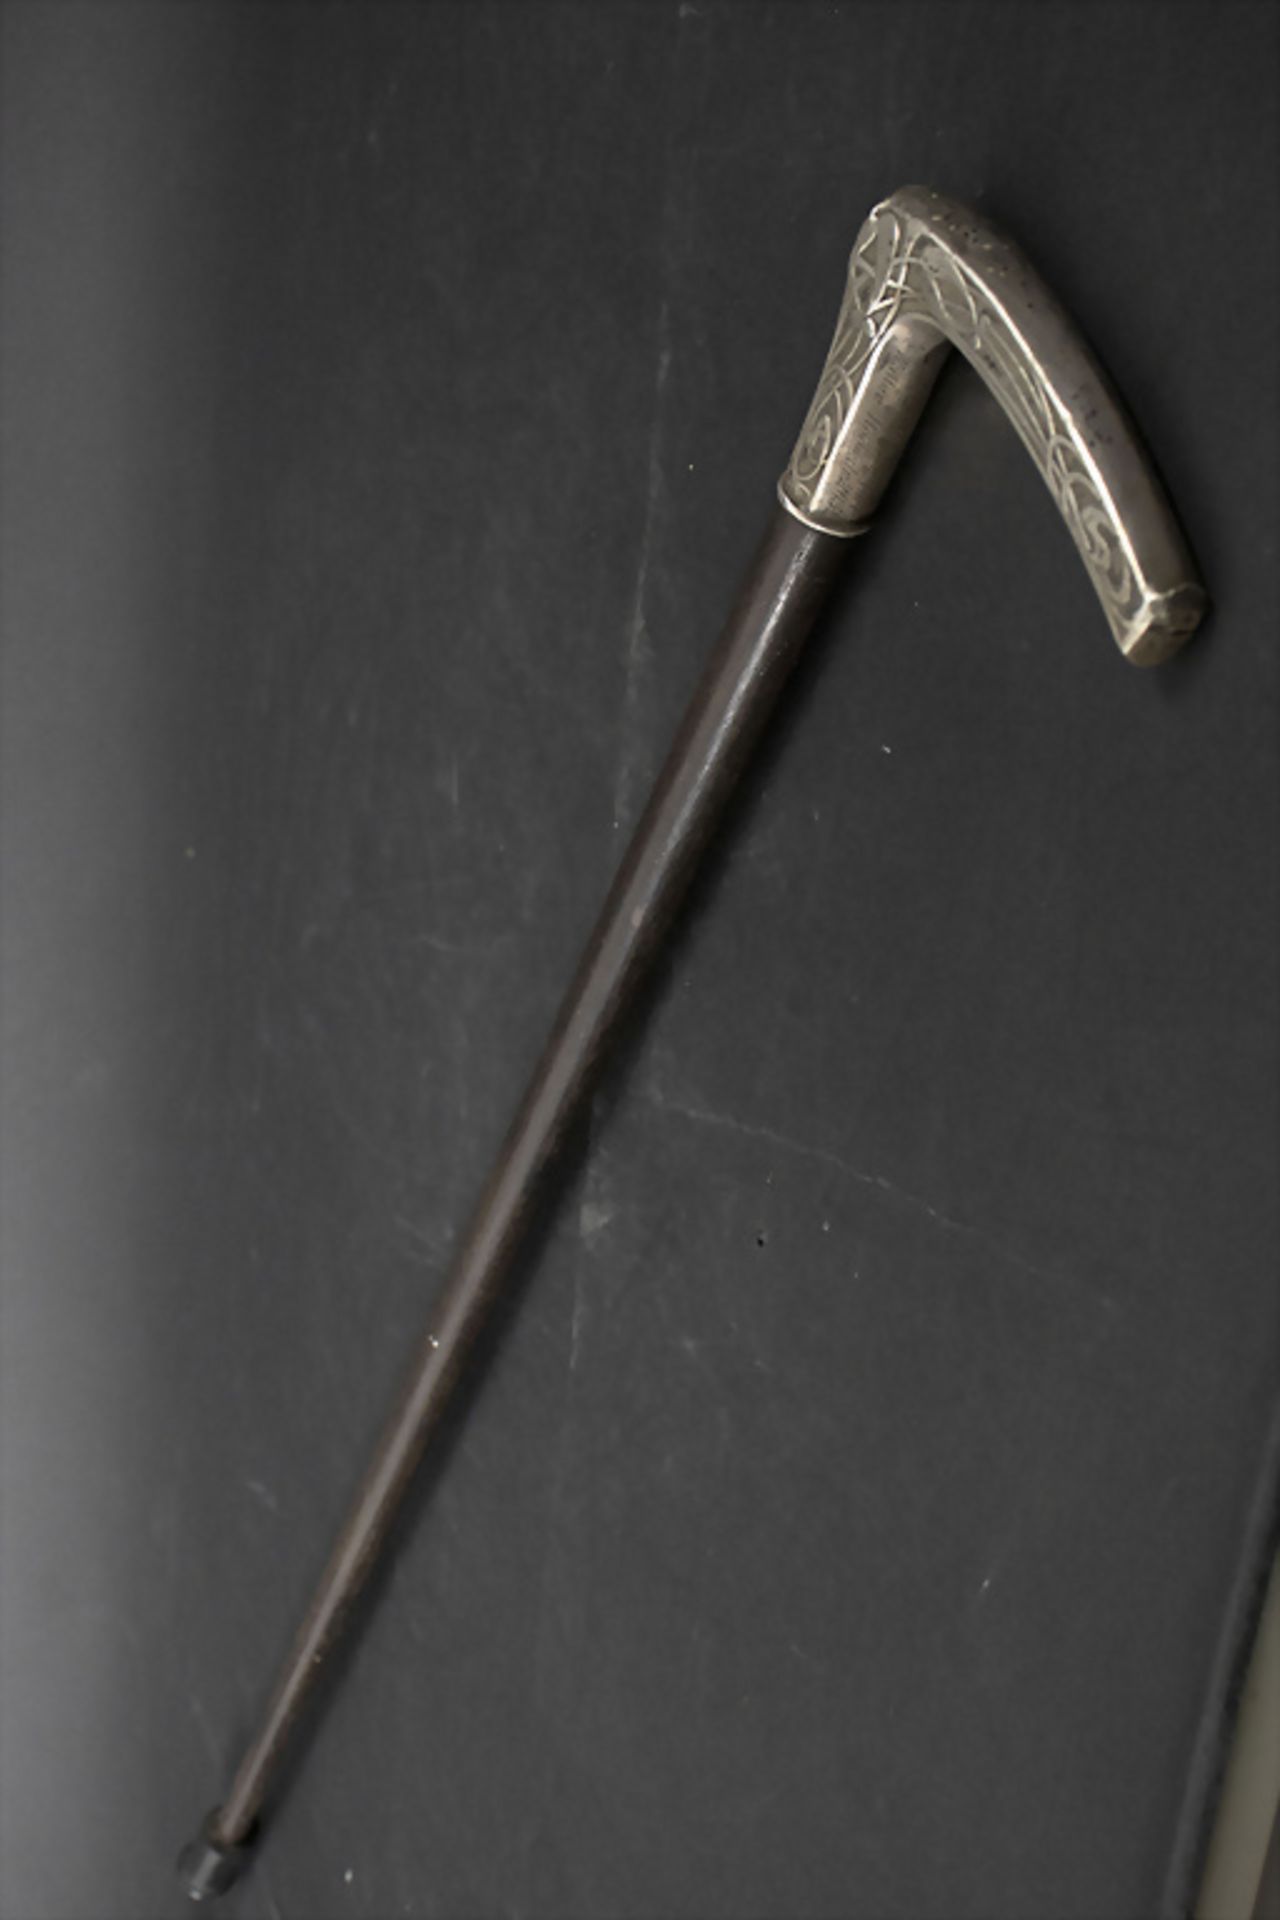 Jugendstil Spazierstock mit Silbergriff / An Art Nouveau walking stick / cane with silver ... - Bild 3 aus 4